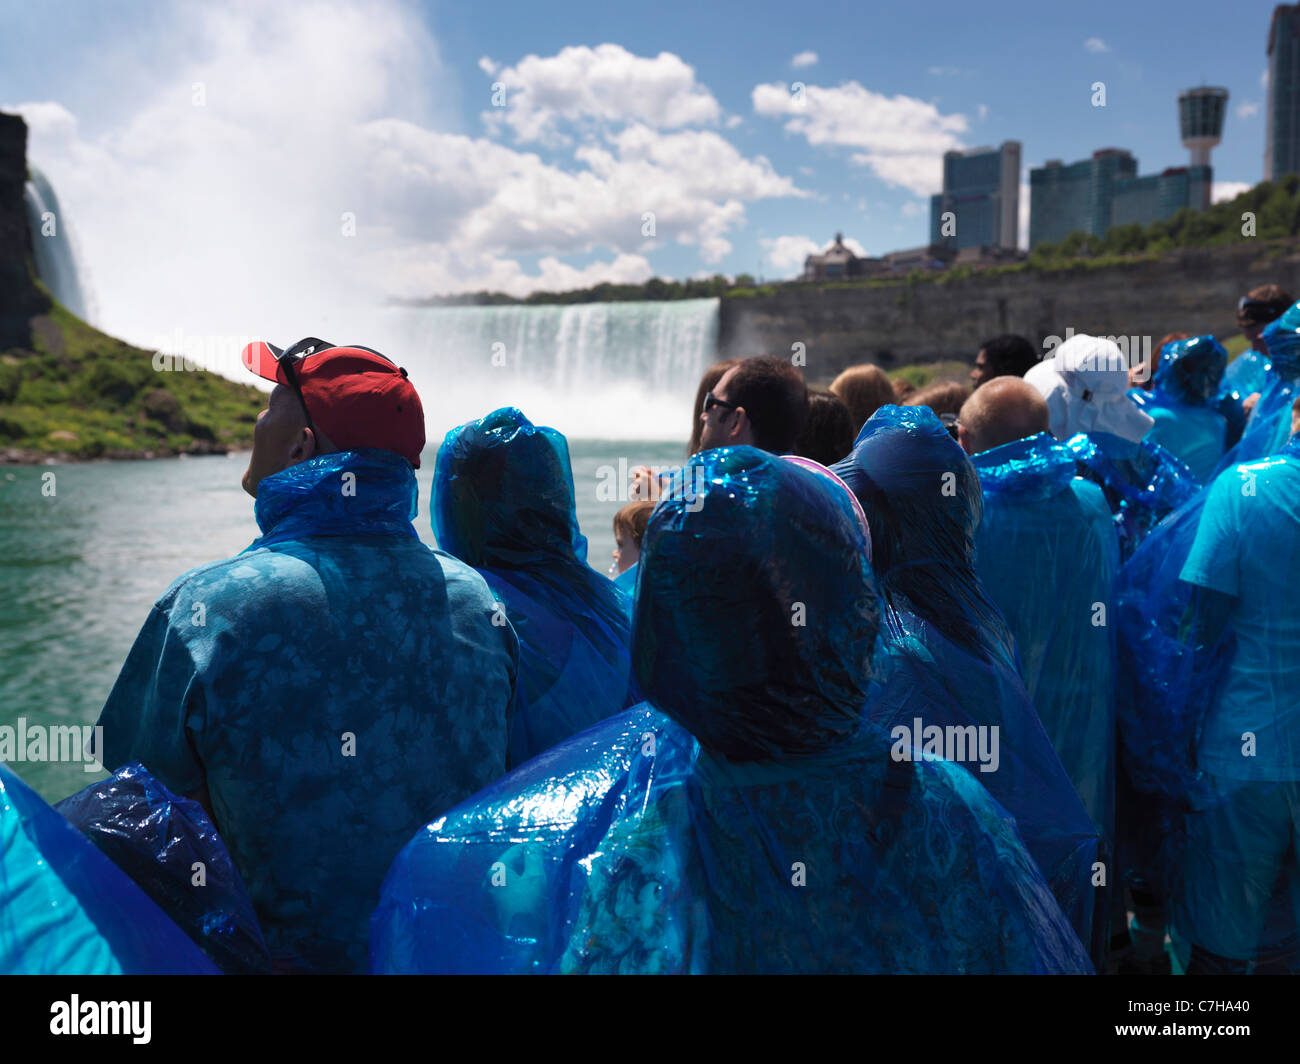 Les gens en bleu manteaux de pluie sur les chutes du Niagara Maid of the Mist boat ride Banque D'Images